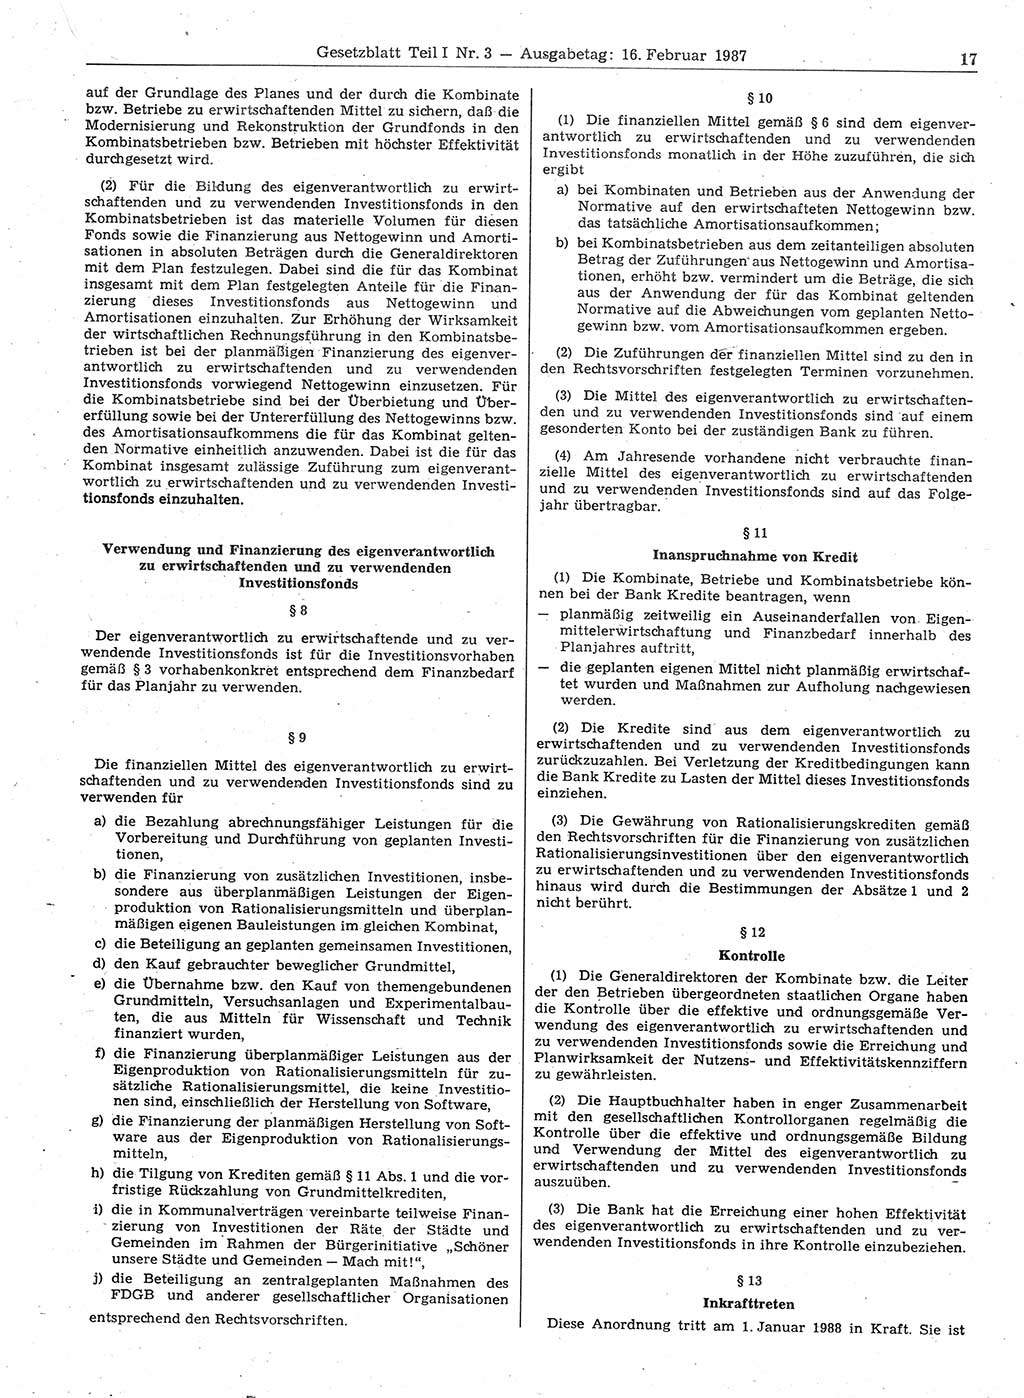 Gesetzblatt (GBl.) der Deutschen Demokratischen Republik (DDR) Teil Ⅰ 1987, Seite 17 (GBl. DDR Ⅰ 1987, S. 17)